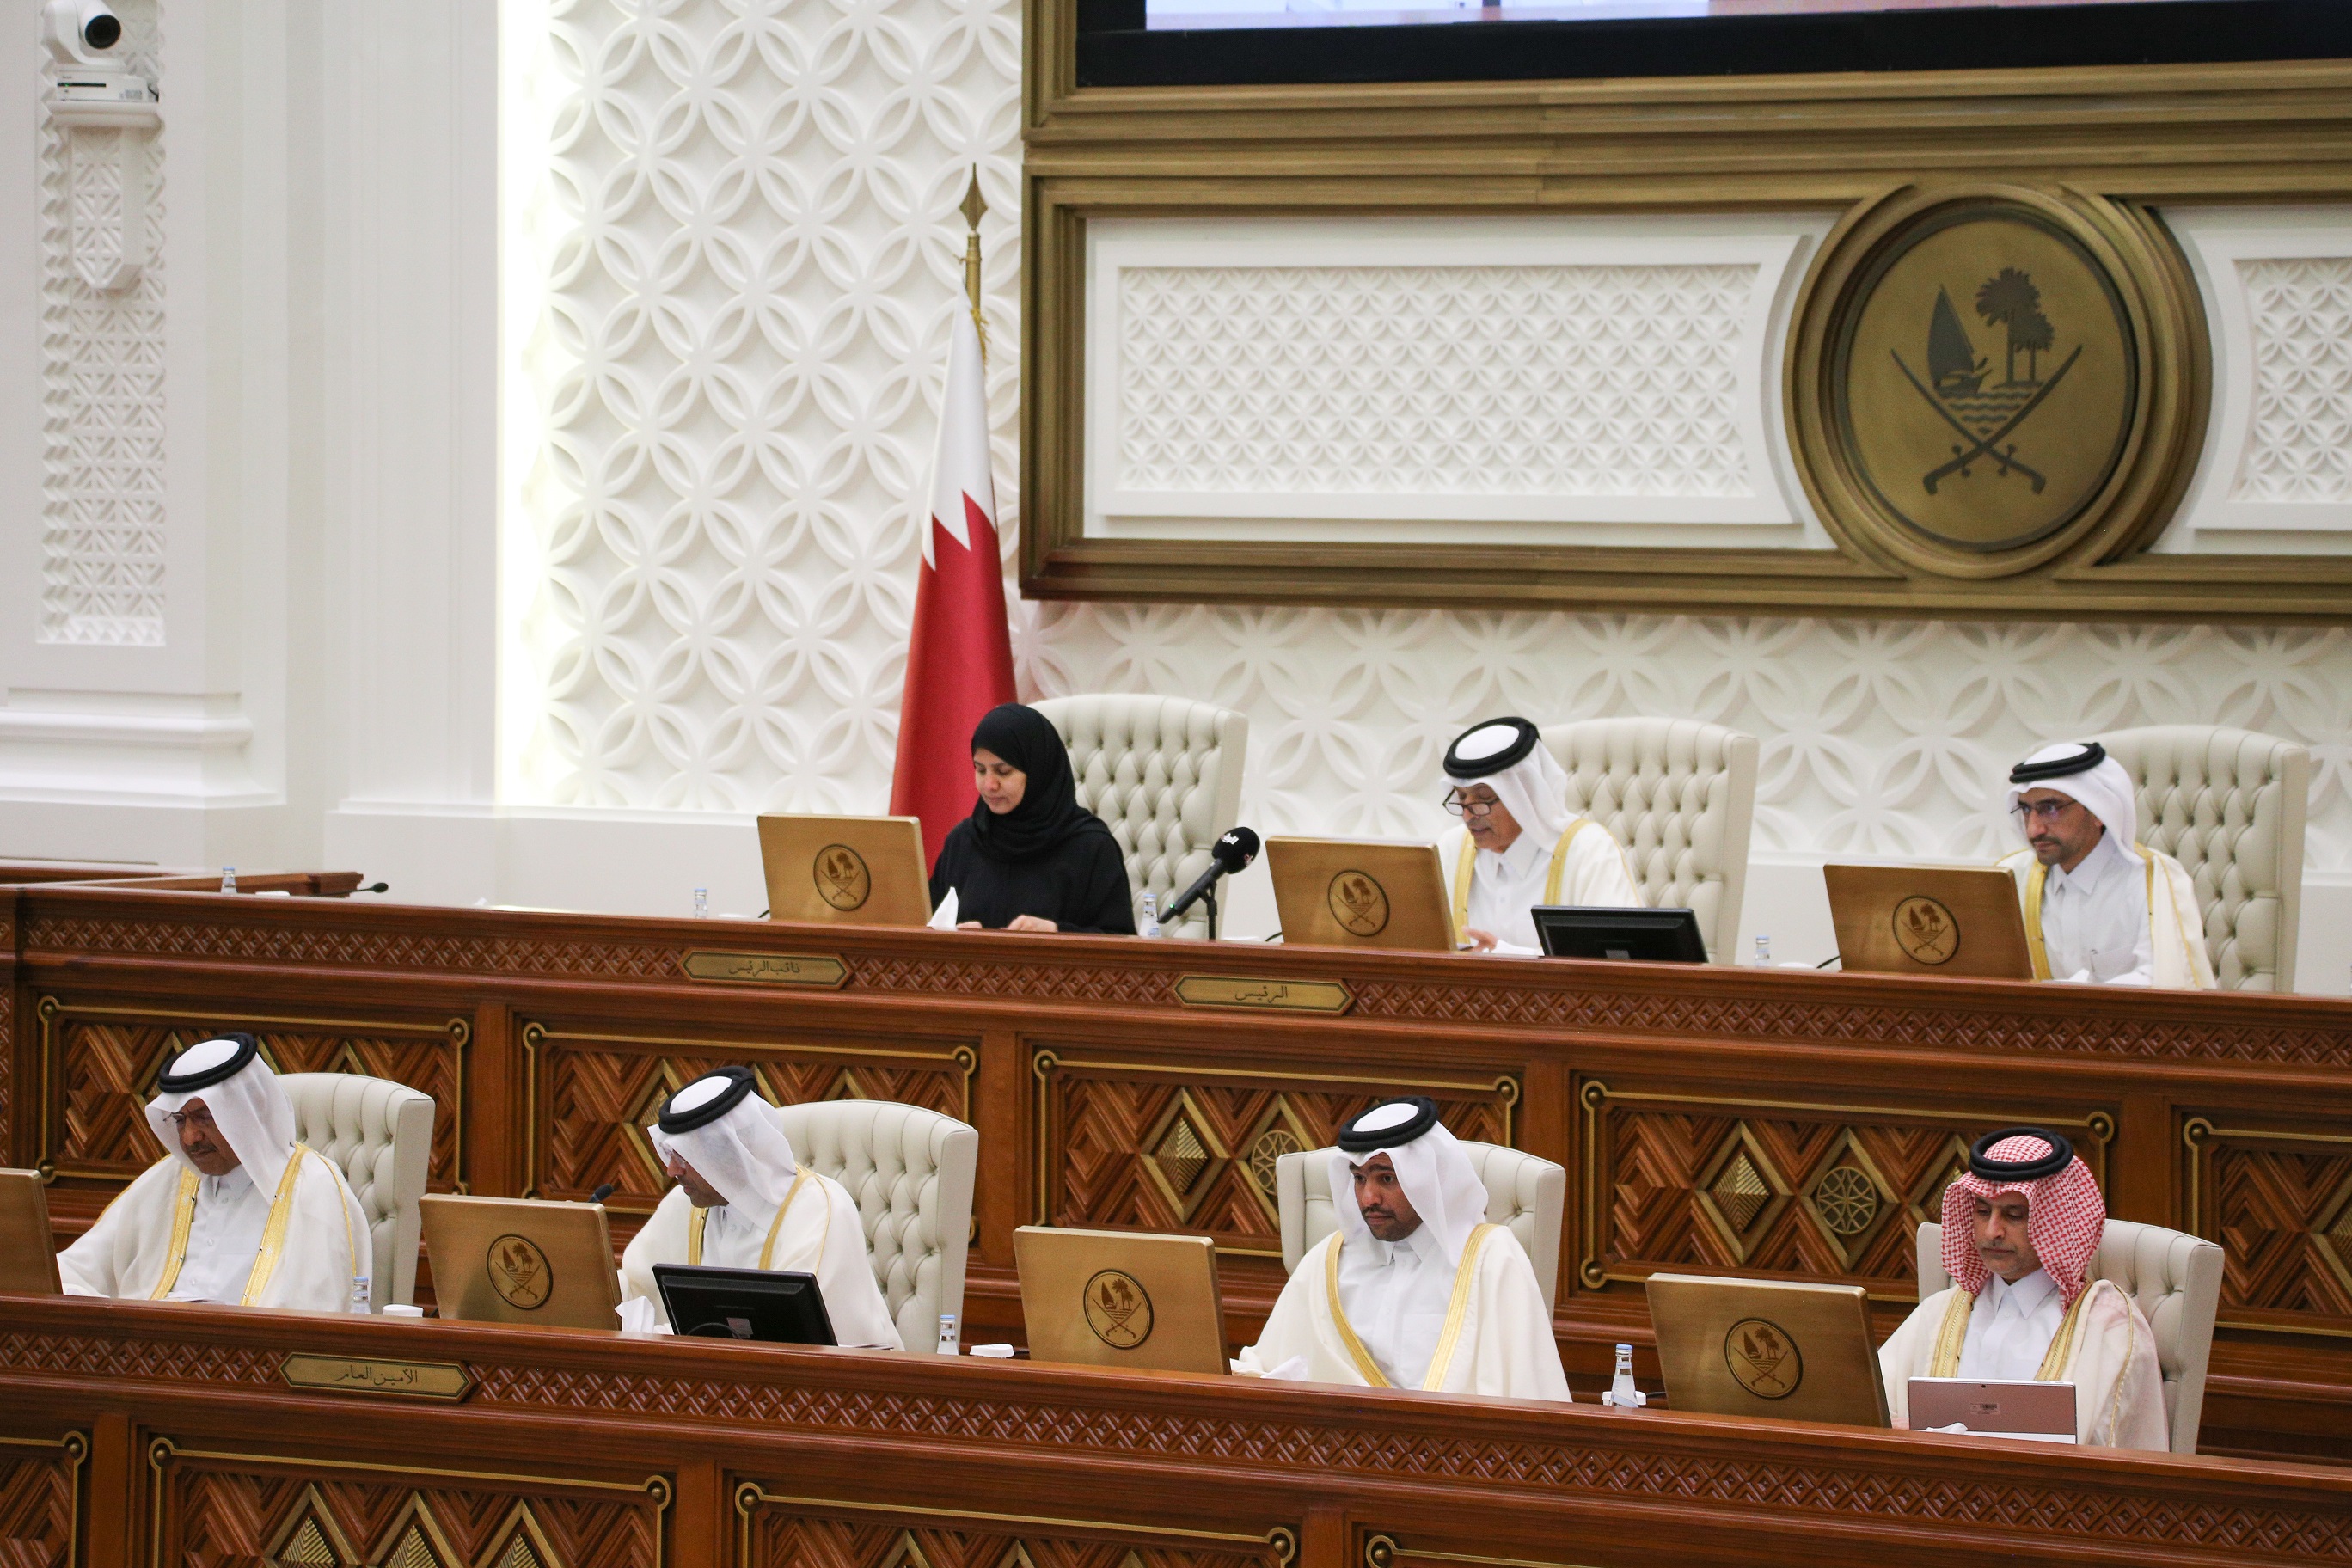 مجلس الشورى يستضيف وزير الدولة لشؤون مجلس الوزراء ورئيس جهاز التخطيط ويستعرض استراتيجيات وخطط التنمية الوطنية